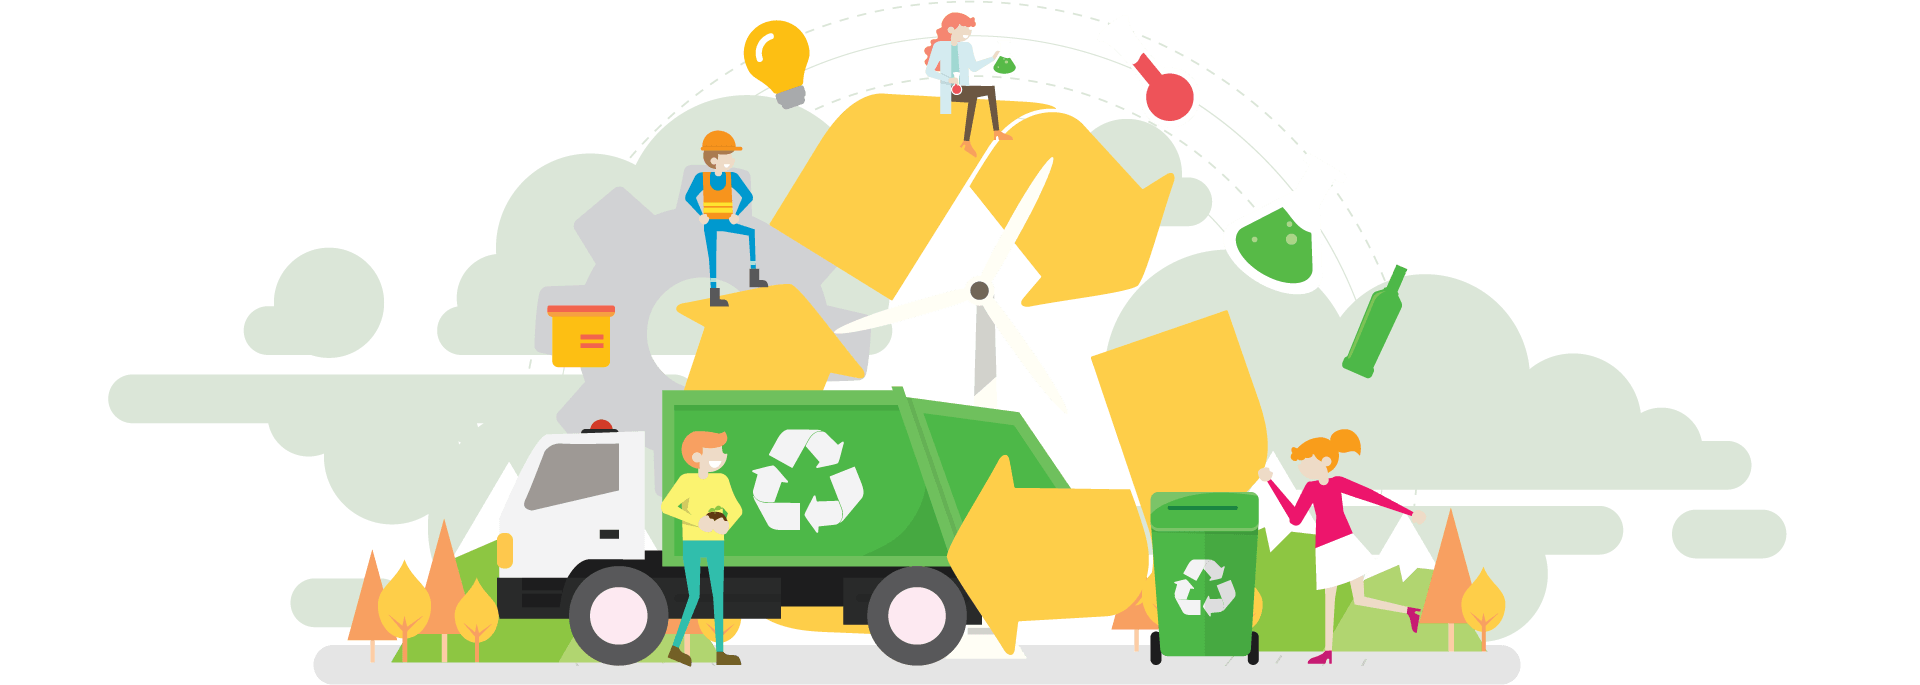 waste management system